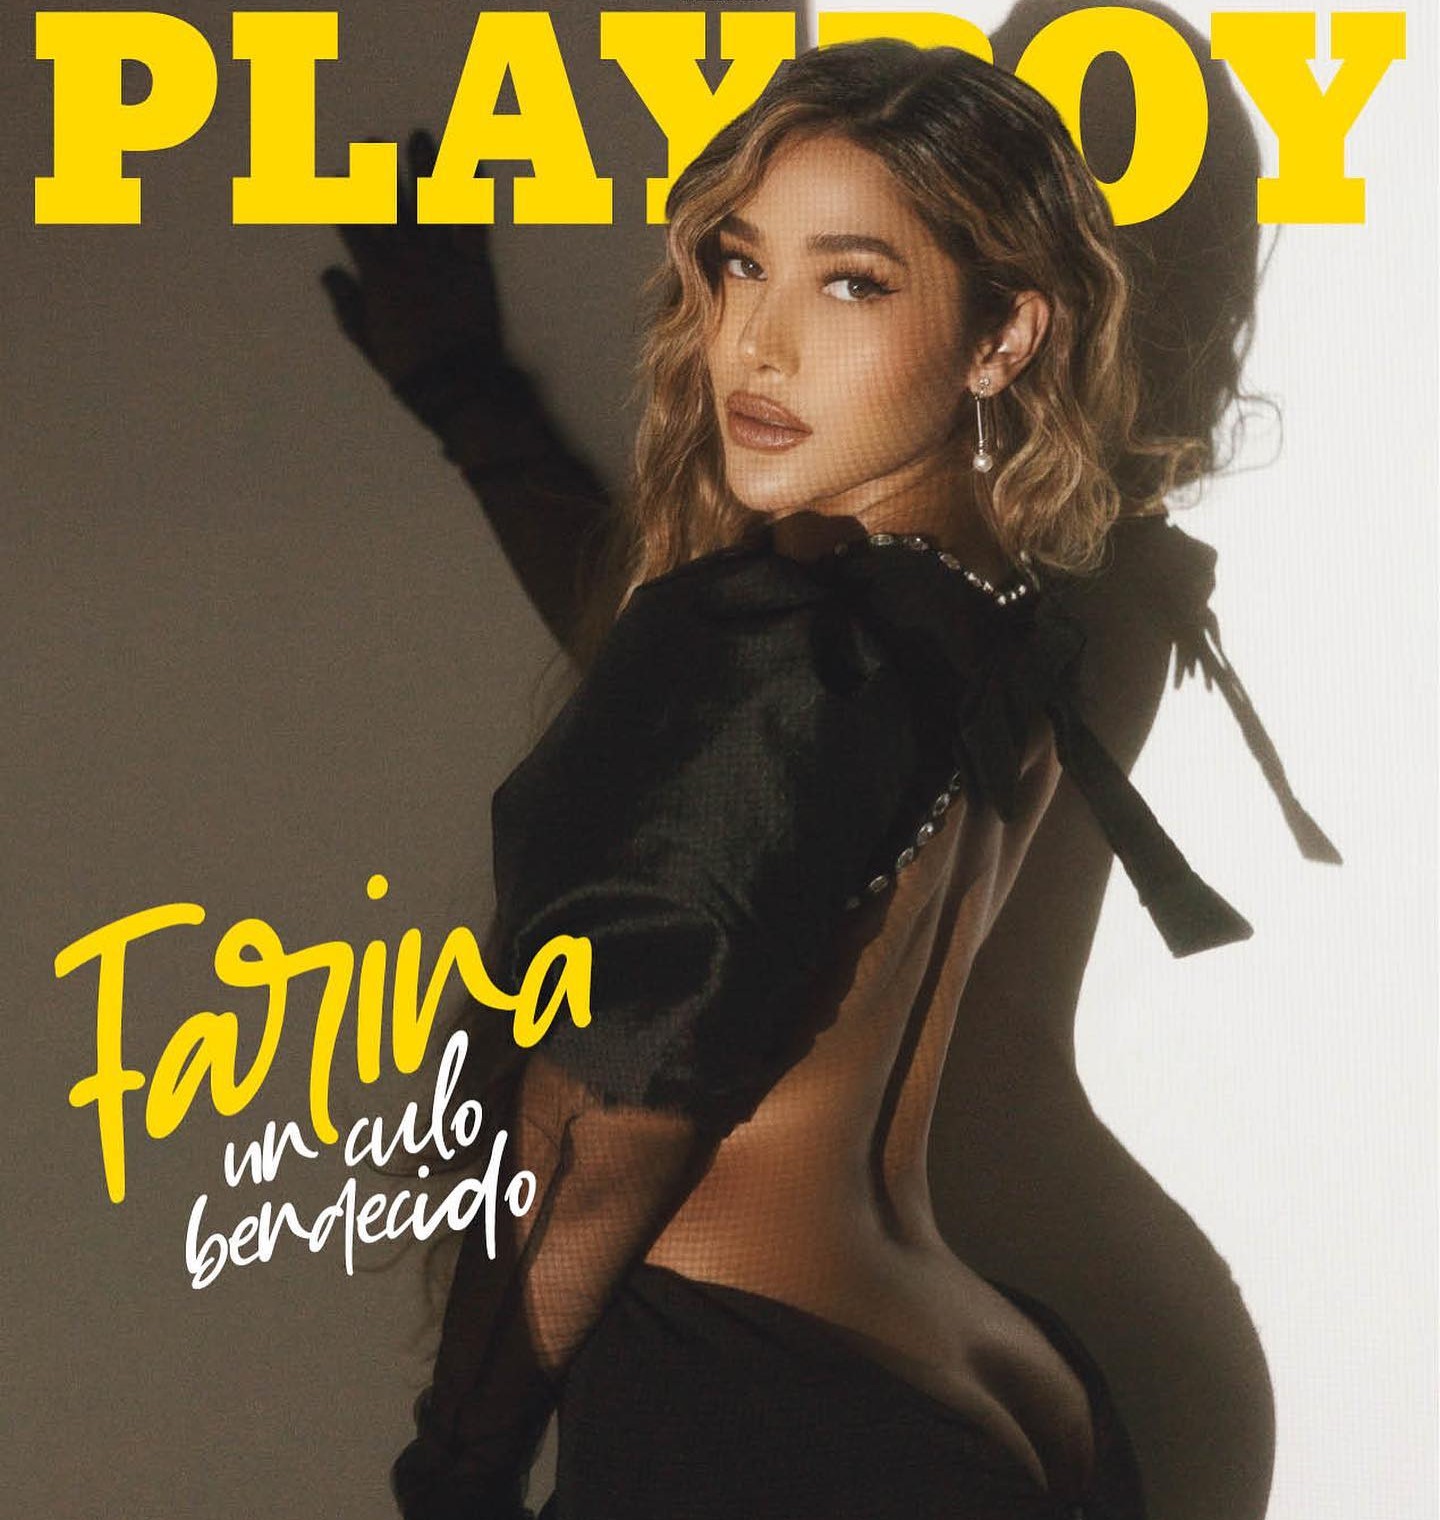 Farina debuta en playboy por toda américa latina con su más reciente portada